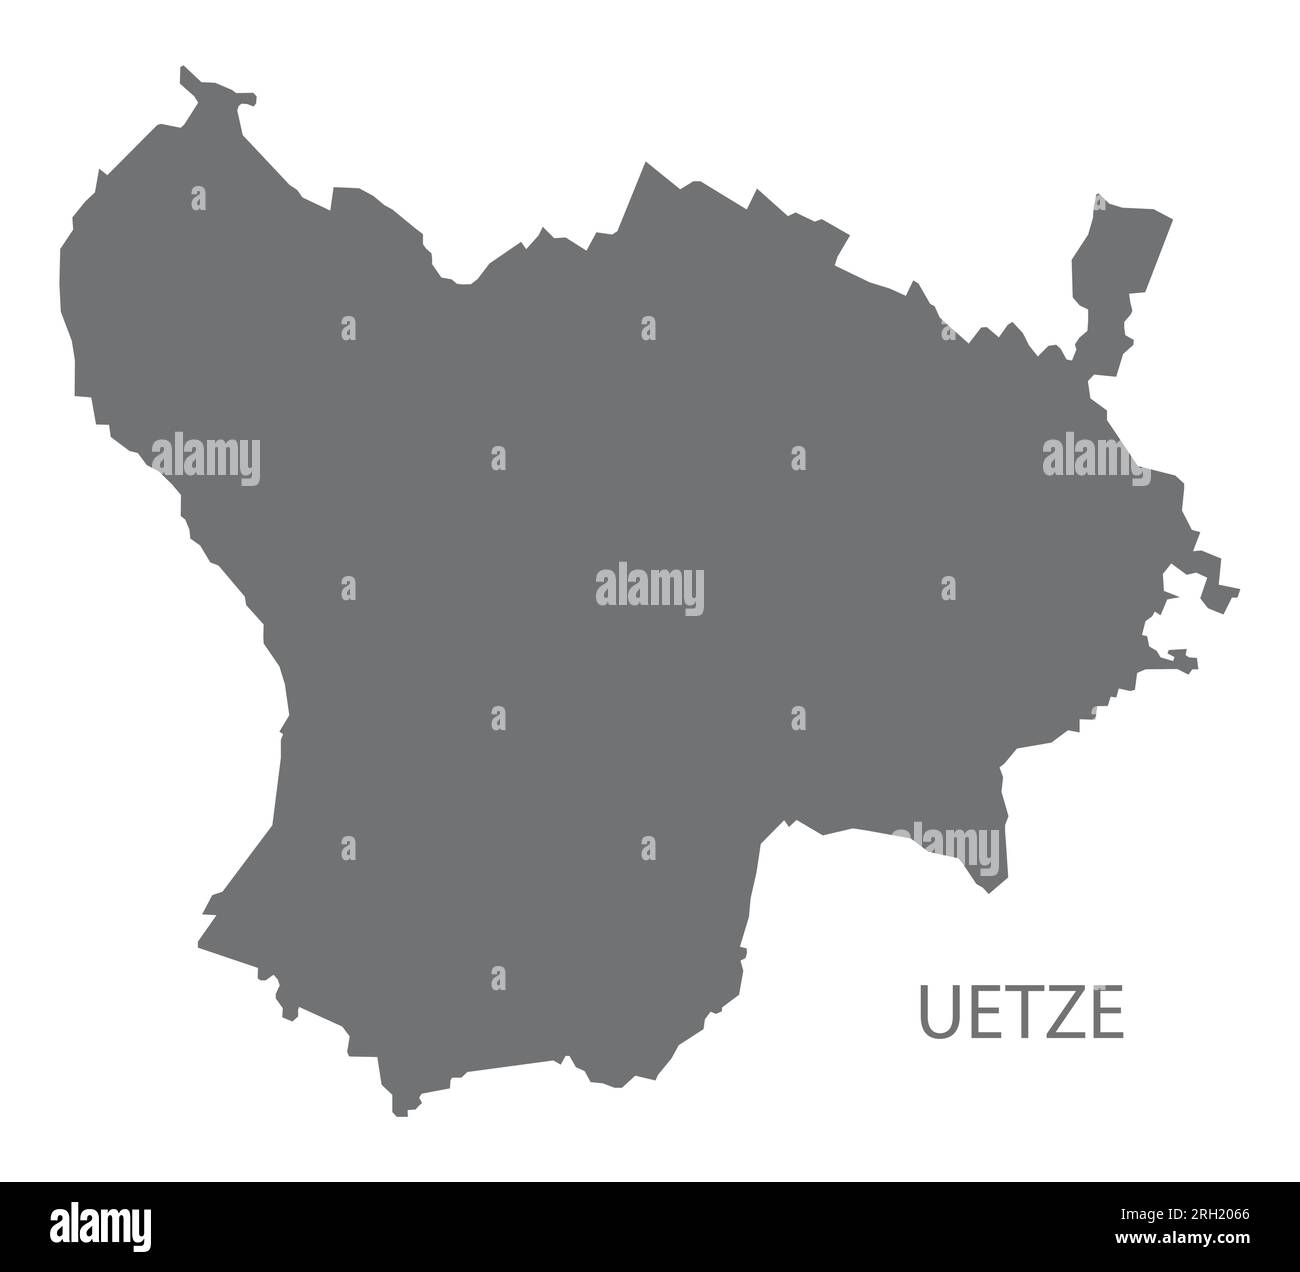 Uetze mappa della città tedesca illustrazione grigia sagoma della silhouette Illustrazione Vettoriale